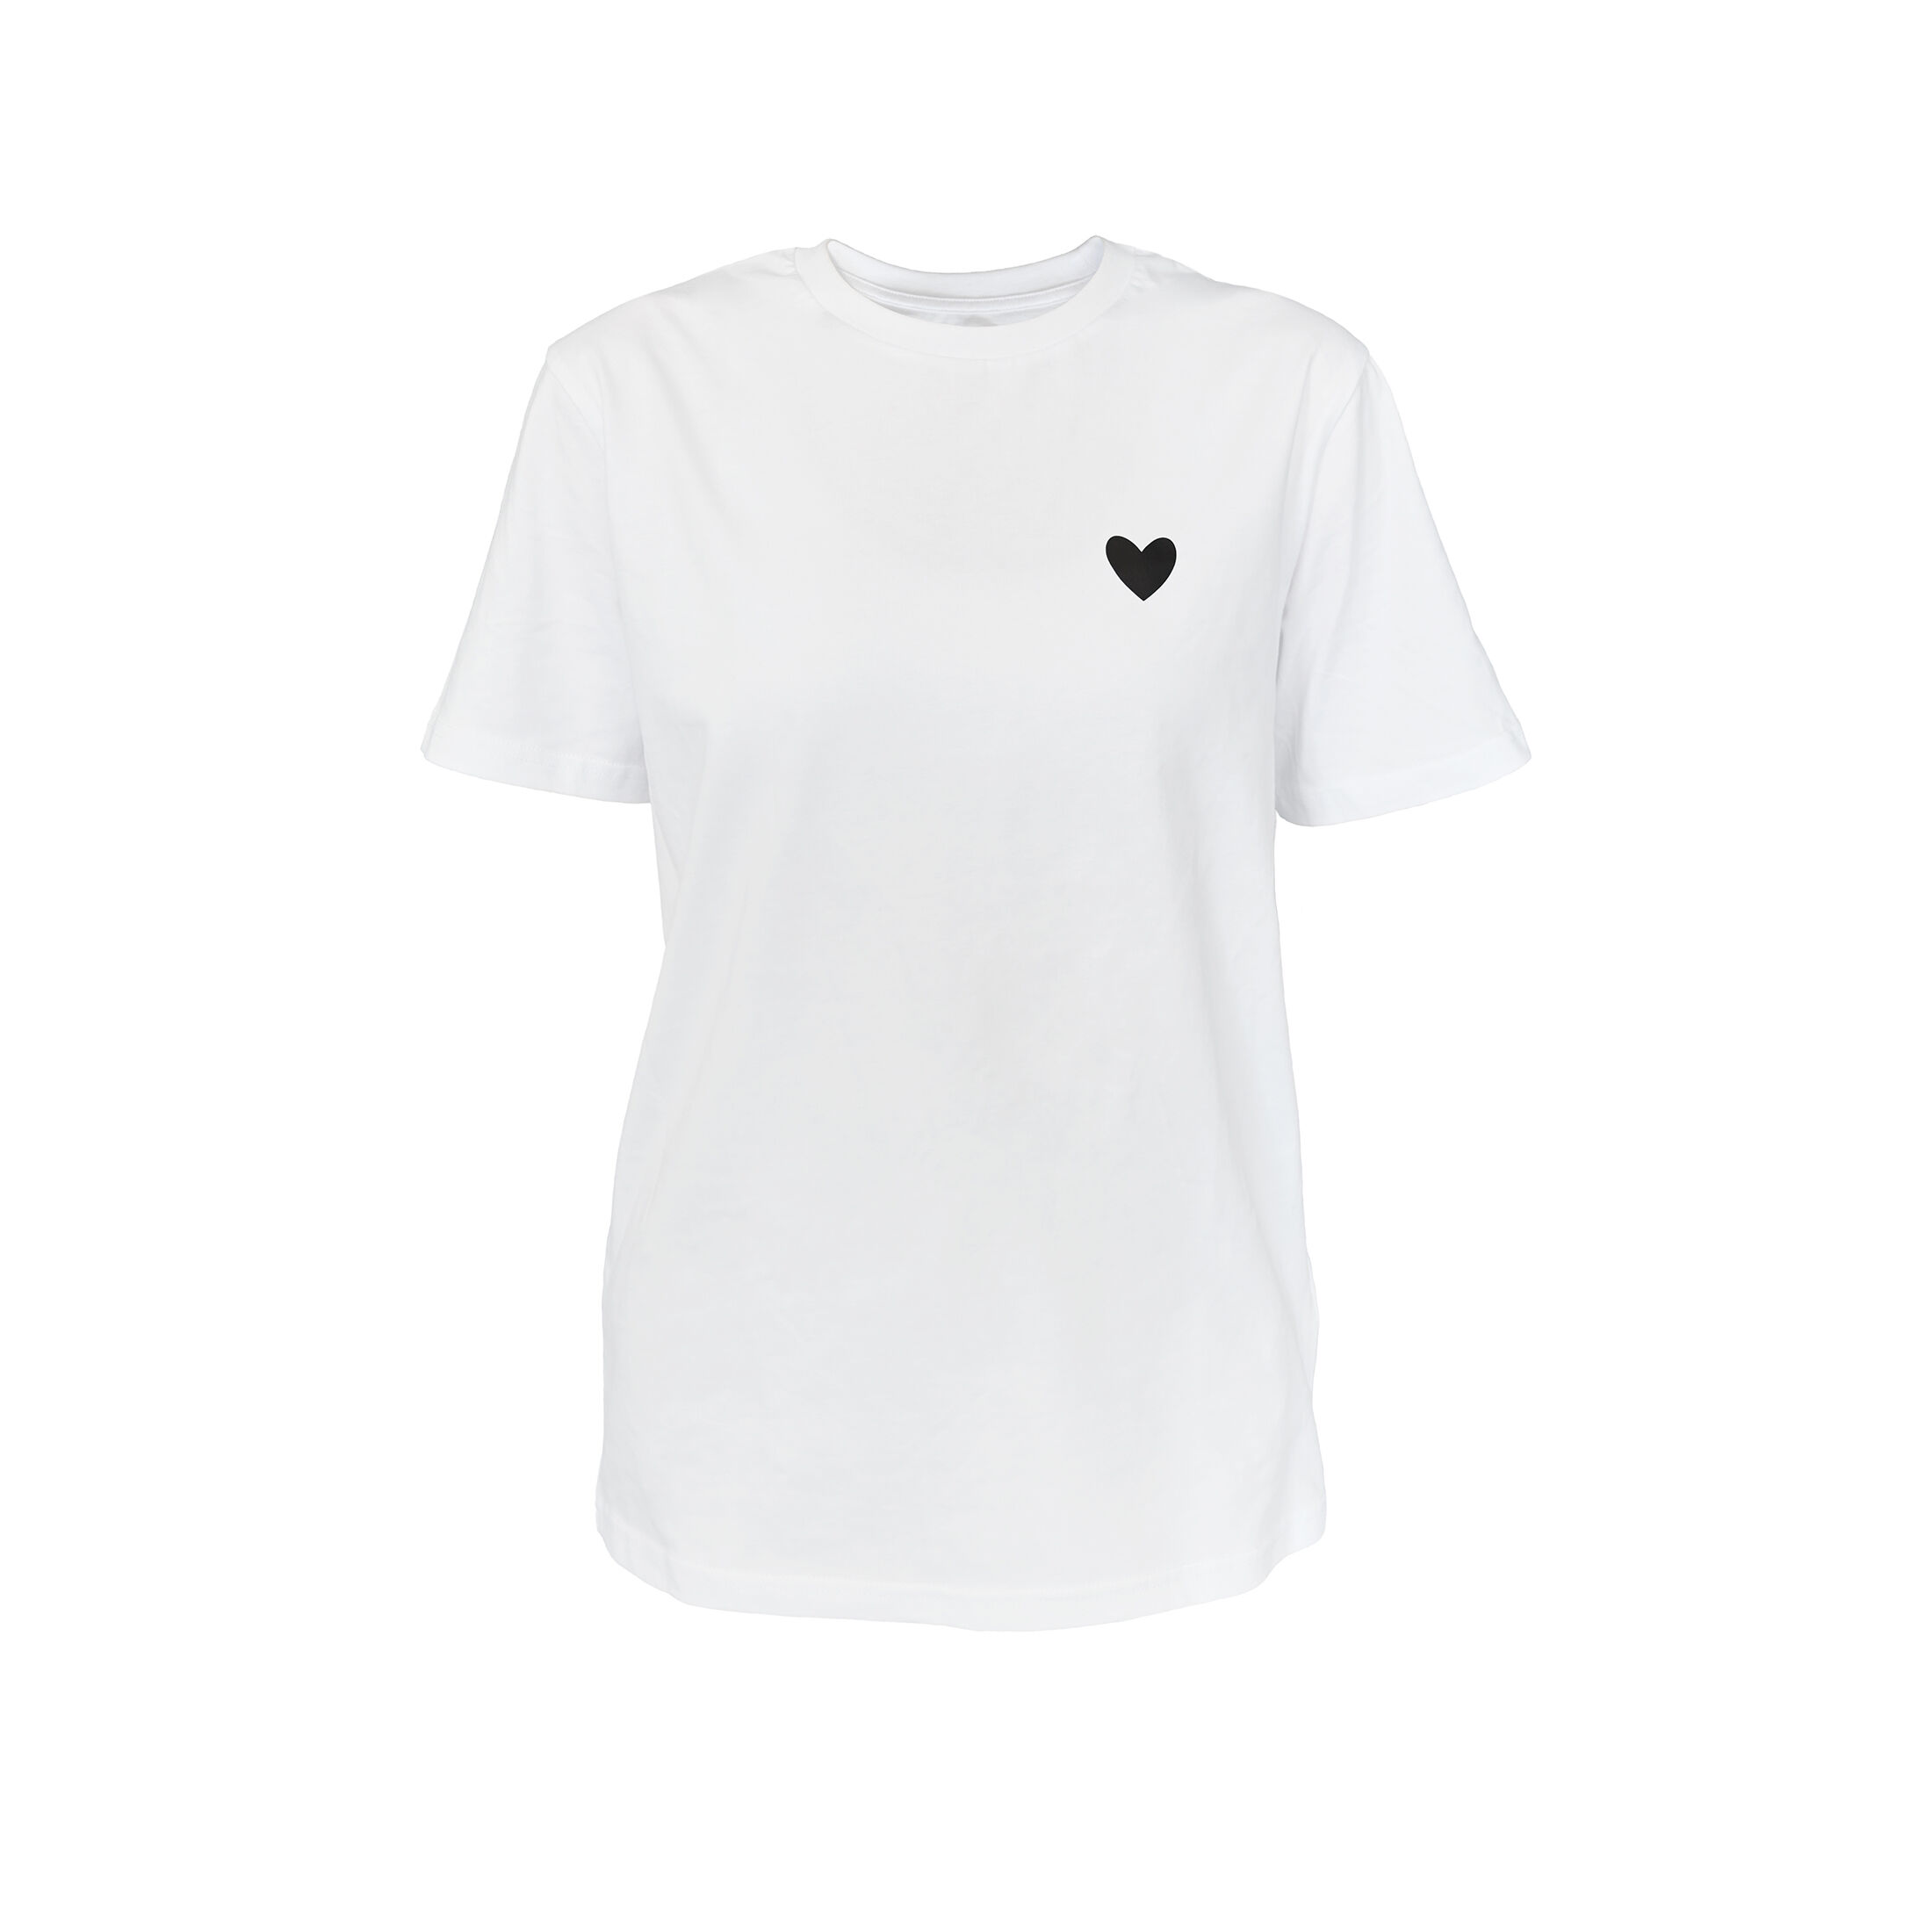 T-Shirt für Damen JODIE T-Shirt Weiss Herz Schwarz jetzt kaufen CRICKIT